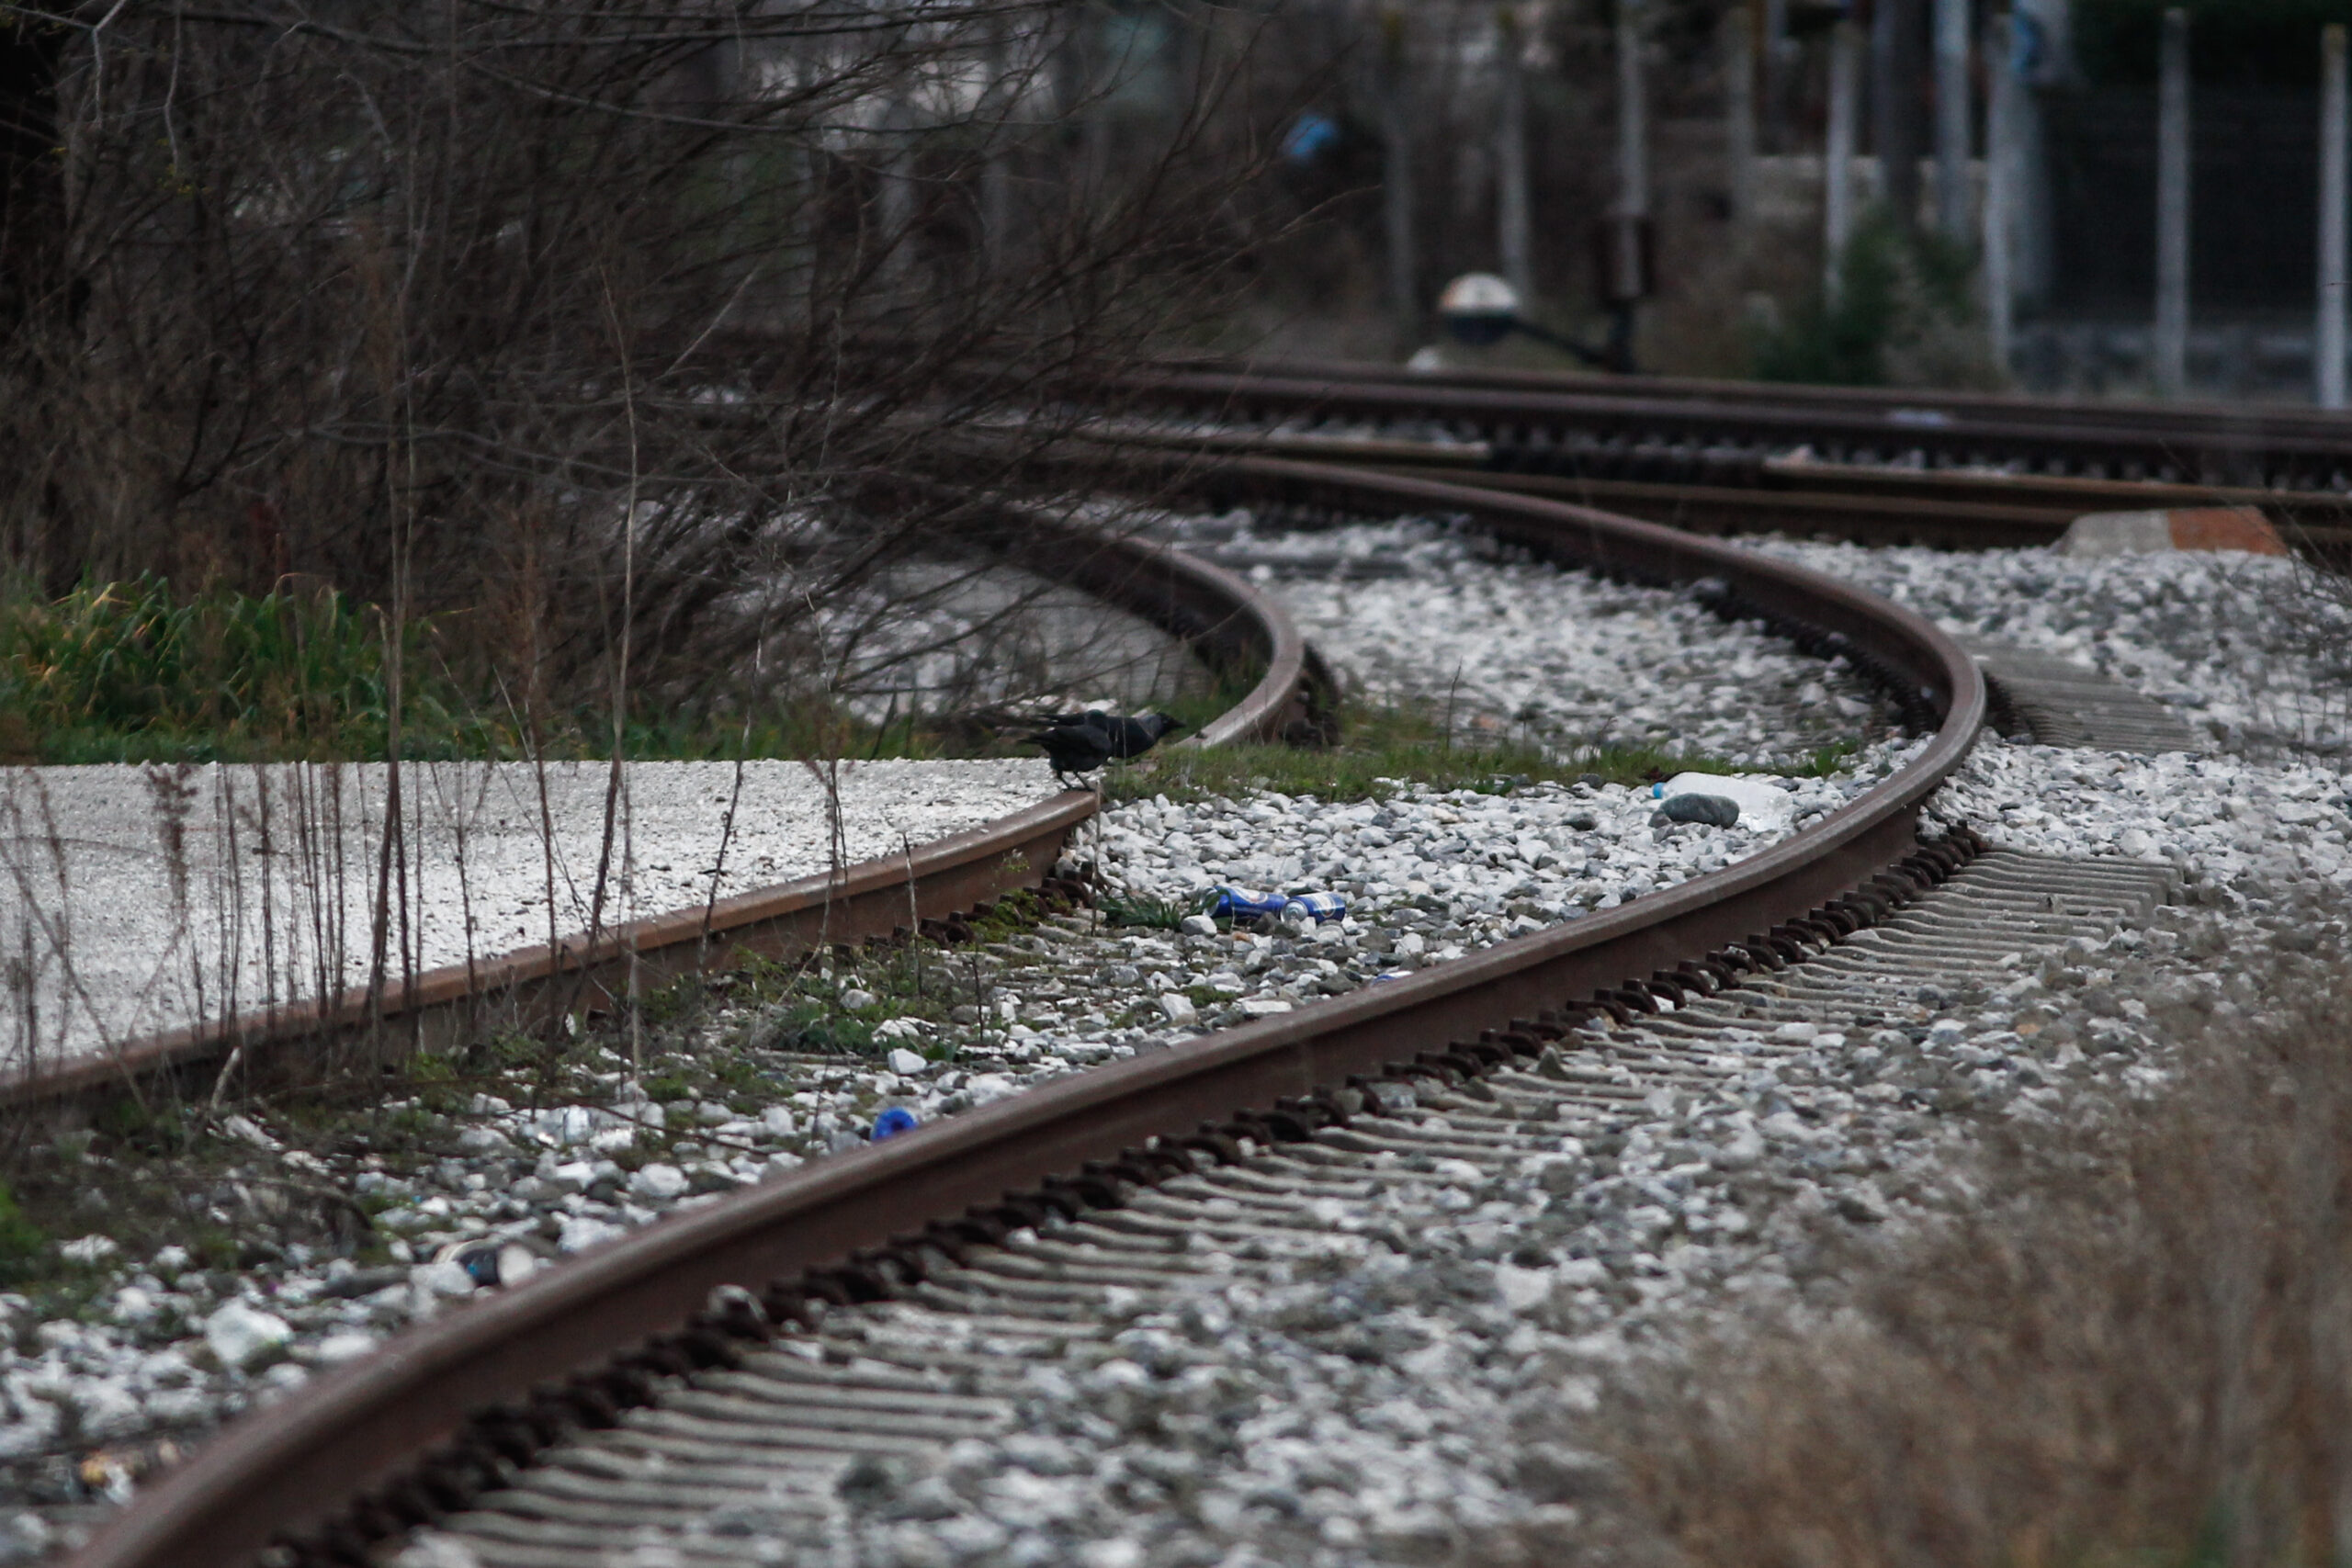 Σχέδιο επανεκκίνησης σιδηροδρόμου: Λιγότεροι σταθμοί & συρμοί, αναβάθμιση υποδομών, αυστηρή εκπαίδευση